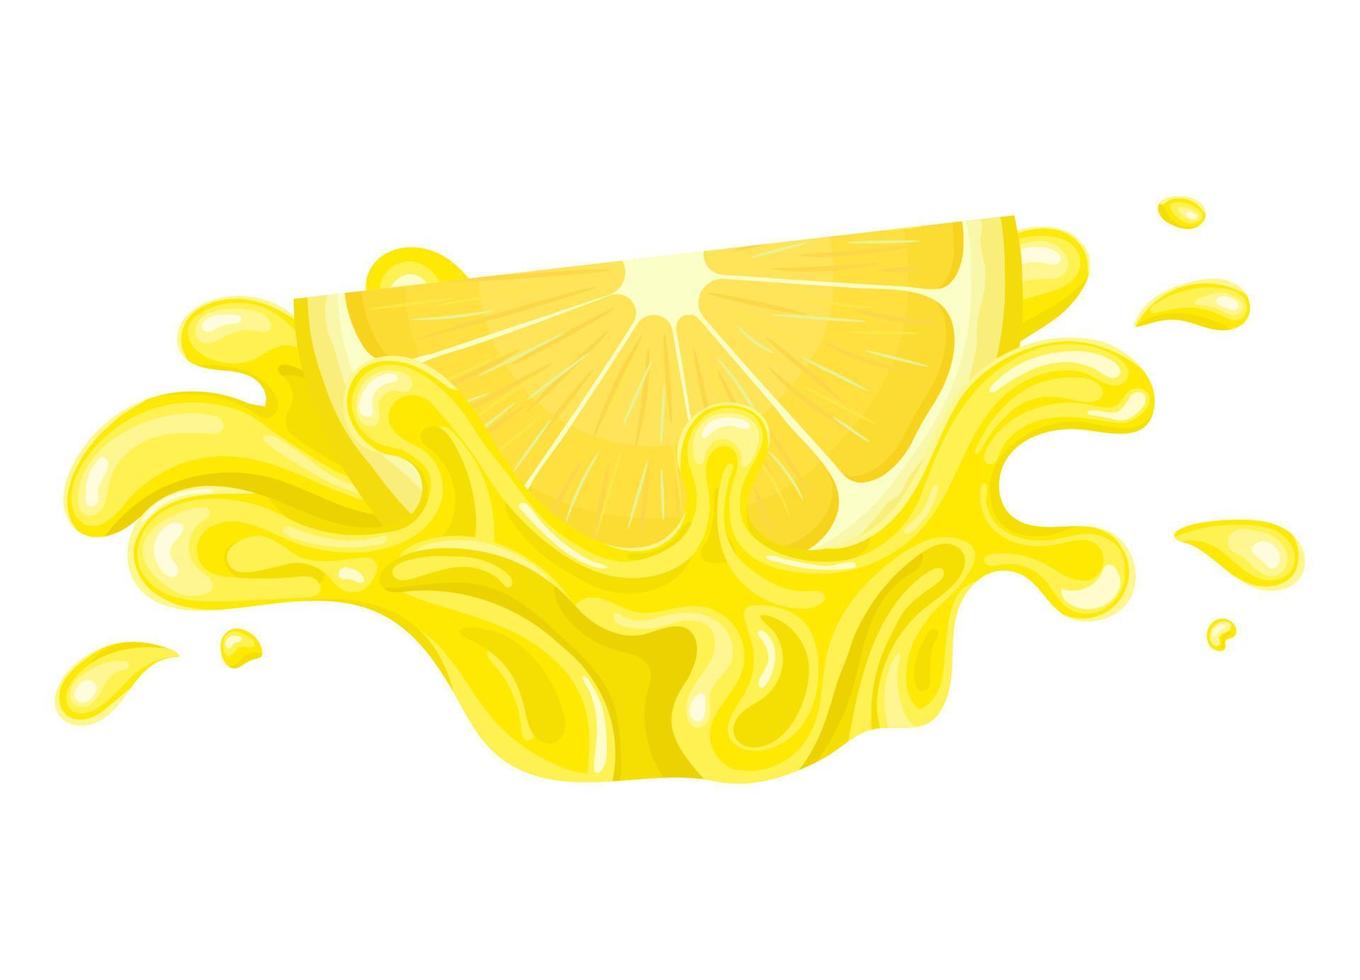 rajada de respingo de suco de limão fatia de corte brilhante fresco isolado no fundo branco. suco de frutas de verão. estilo de desenho animado. ilustração vetorial para qualquer projeto. vetor